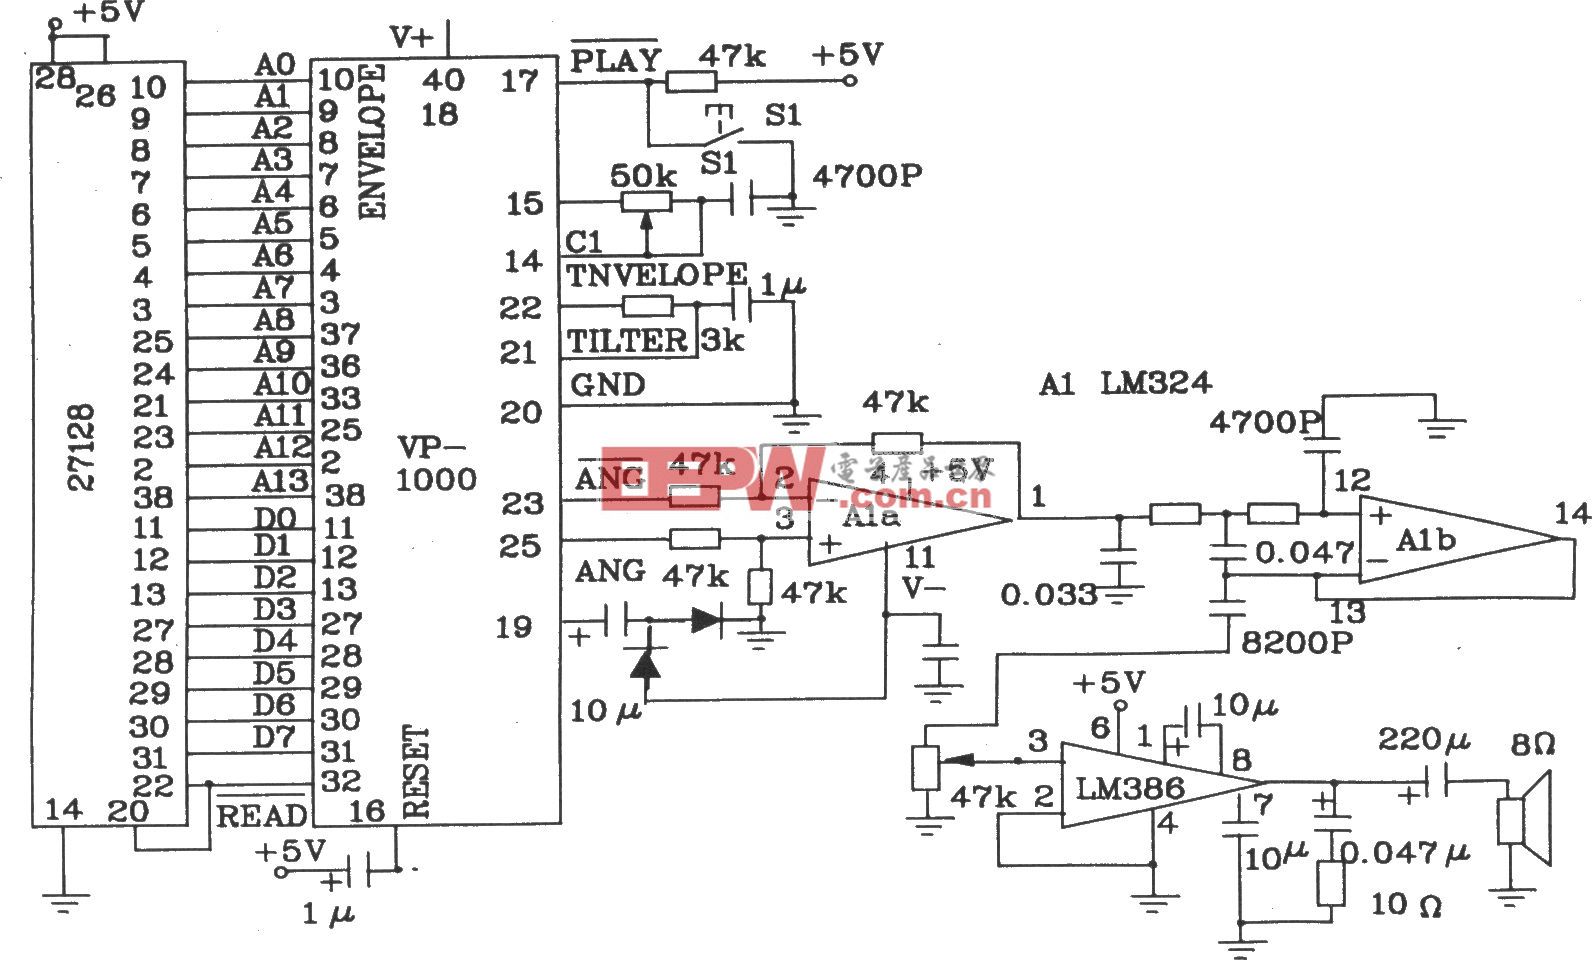 语音合成芯片VP-1000和EEPROM相连只作放音的电路图